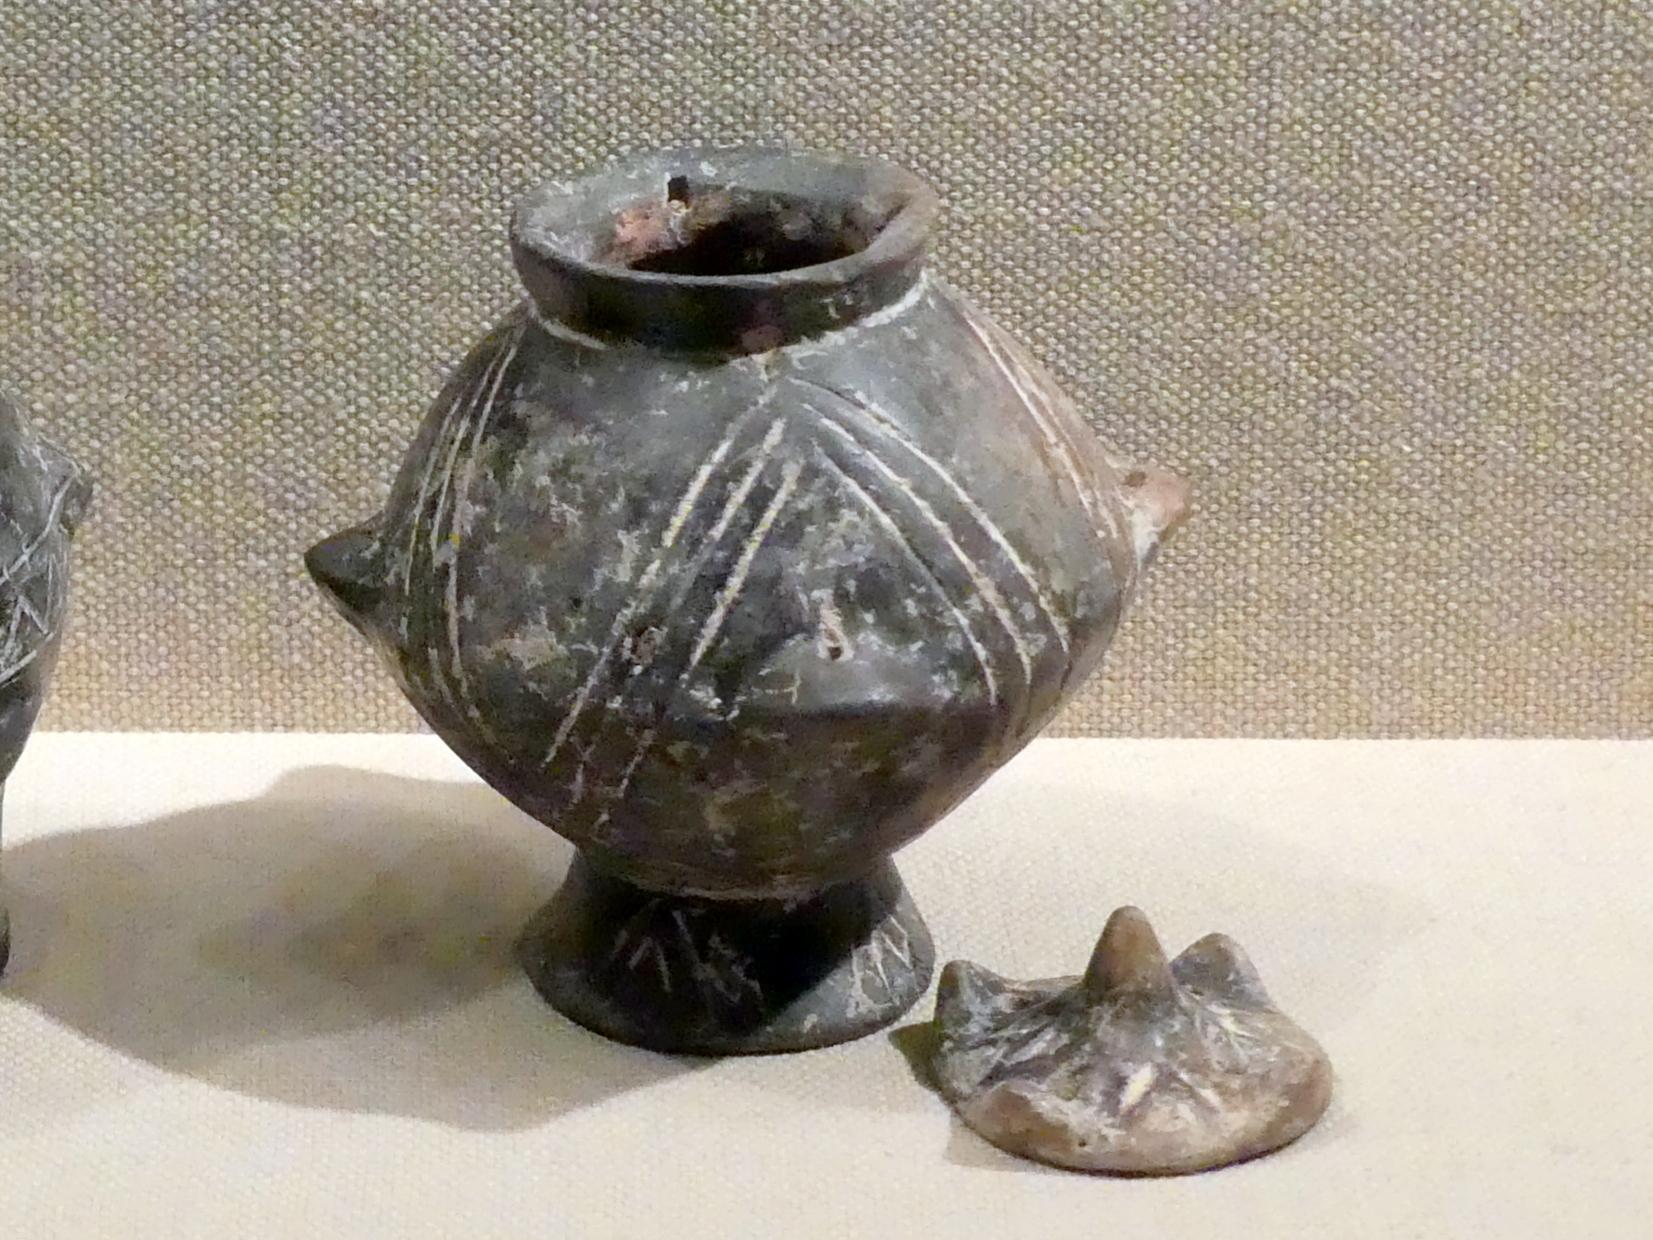 Gefäß mit Deckel und geritzter Dekoration, Frühe Bronzezeit II, 2700 - 2400 v. Chr., 2700 - 2400 v. Chr., Bild 1/2